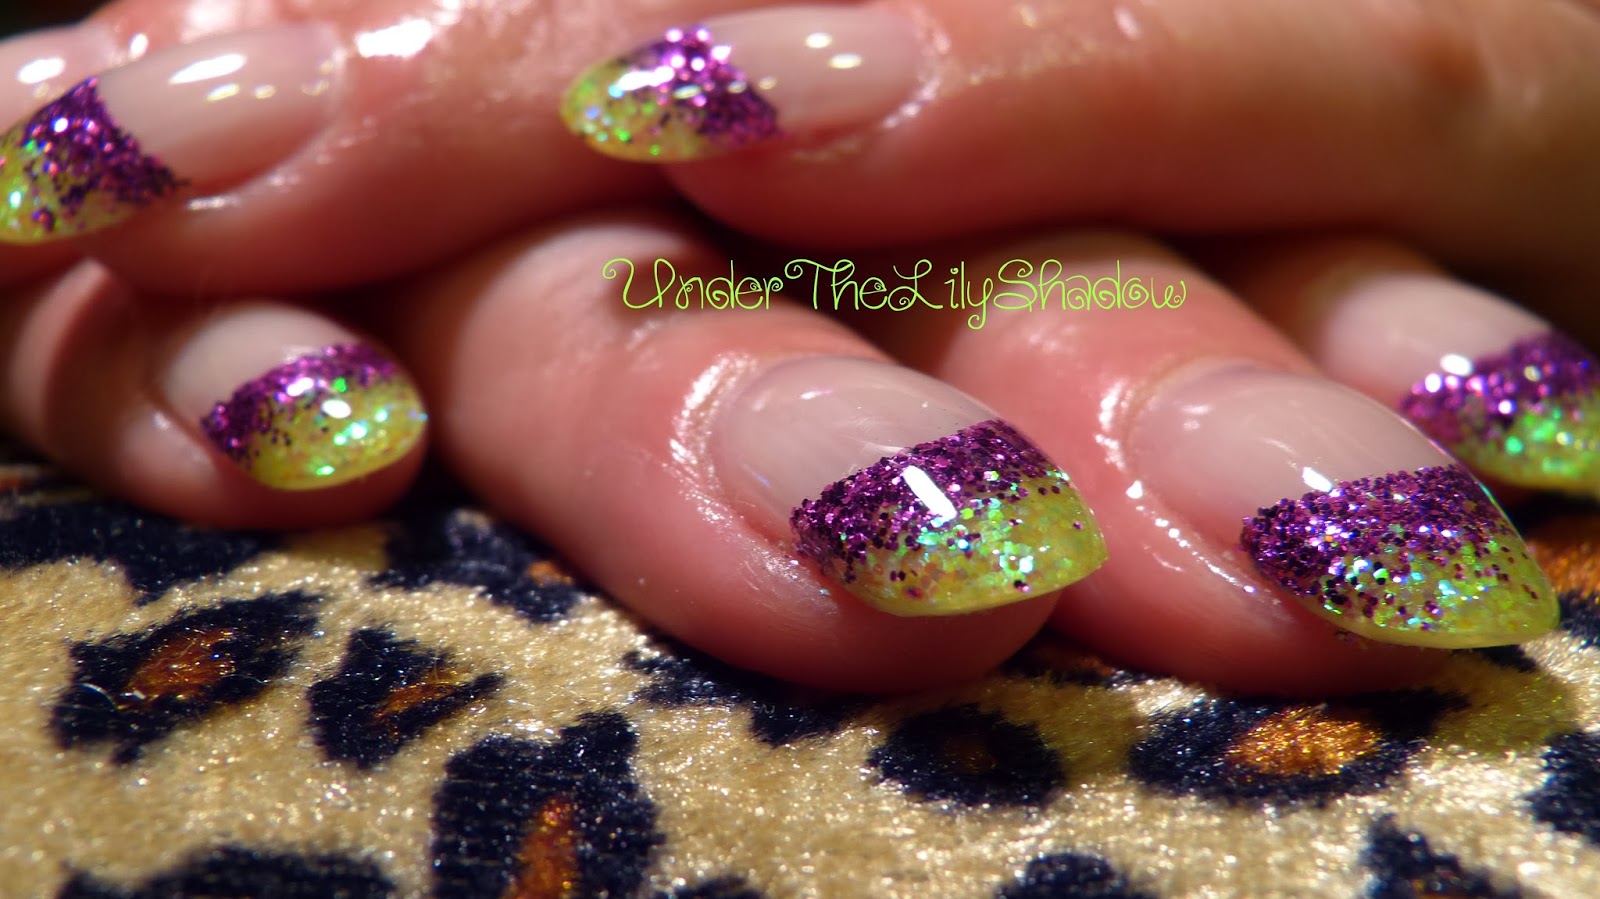 1. Nikki Minaj's Favorite Toe Nail Color - wide 7